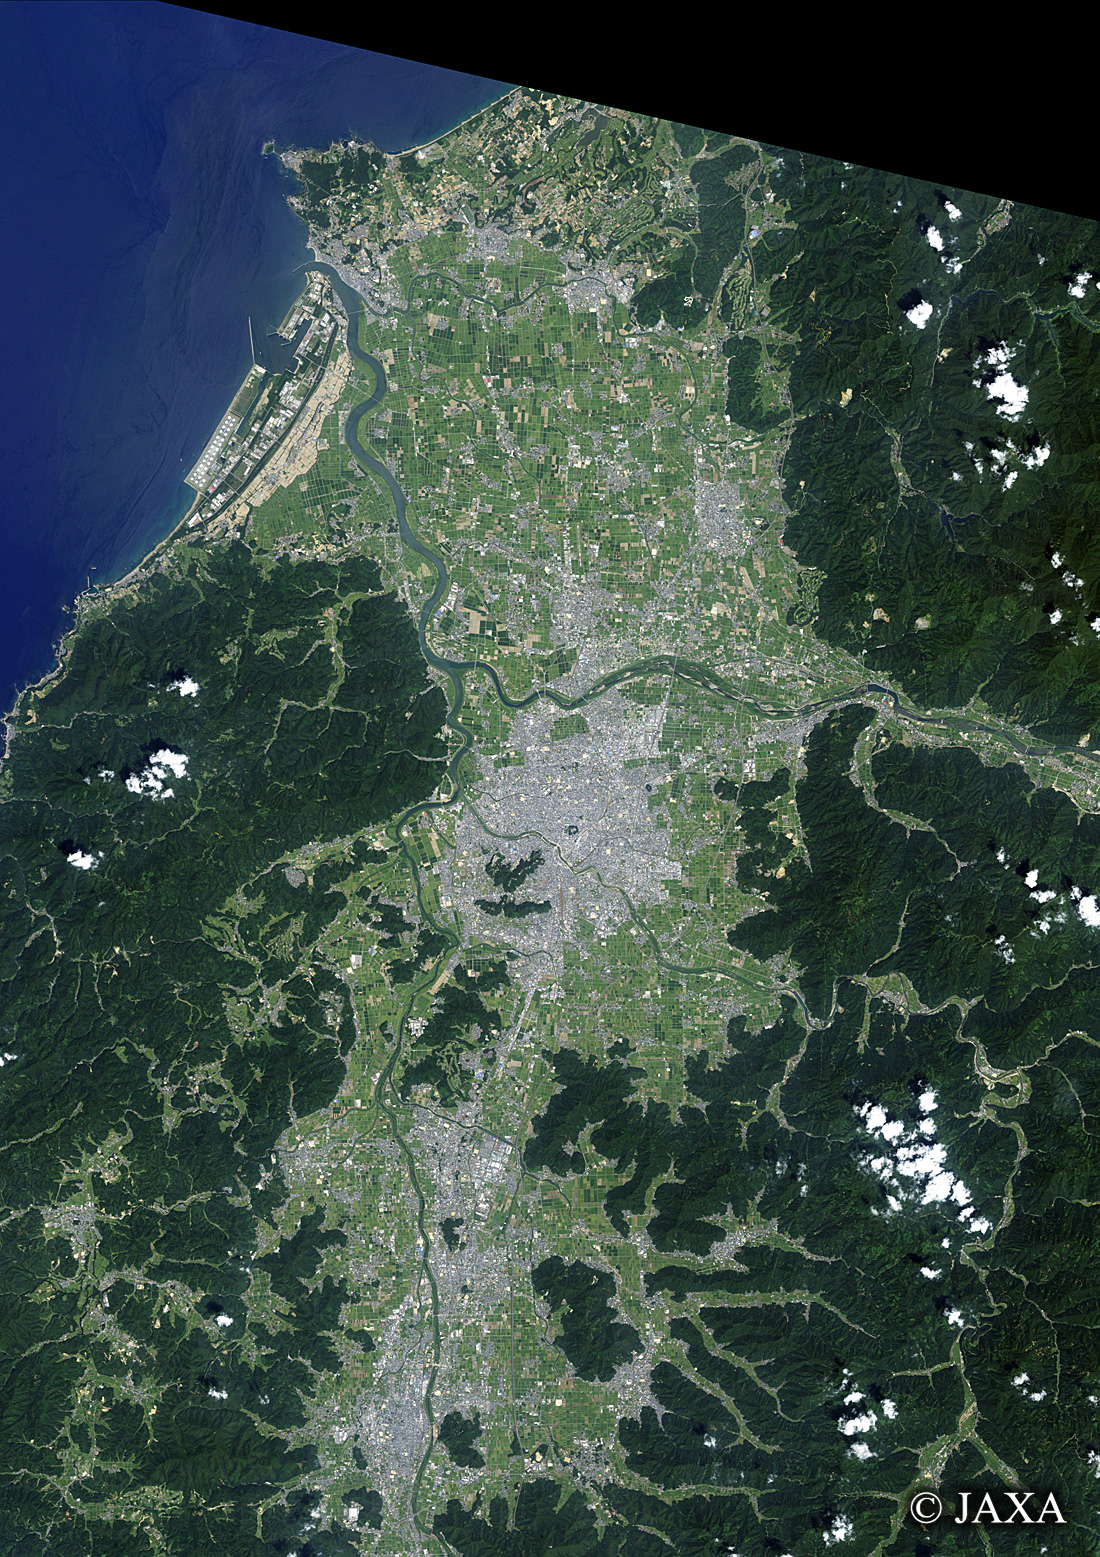 だいちから見た日本の都市 福井市周辺:衛星画像